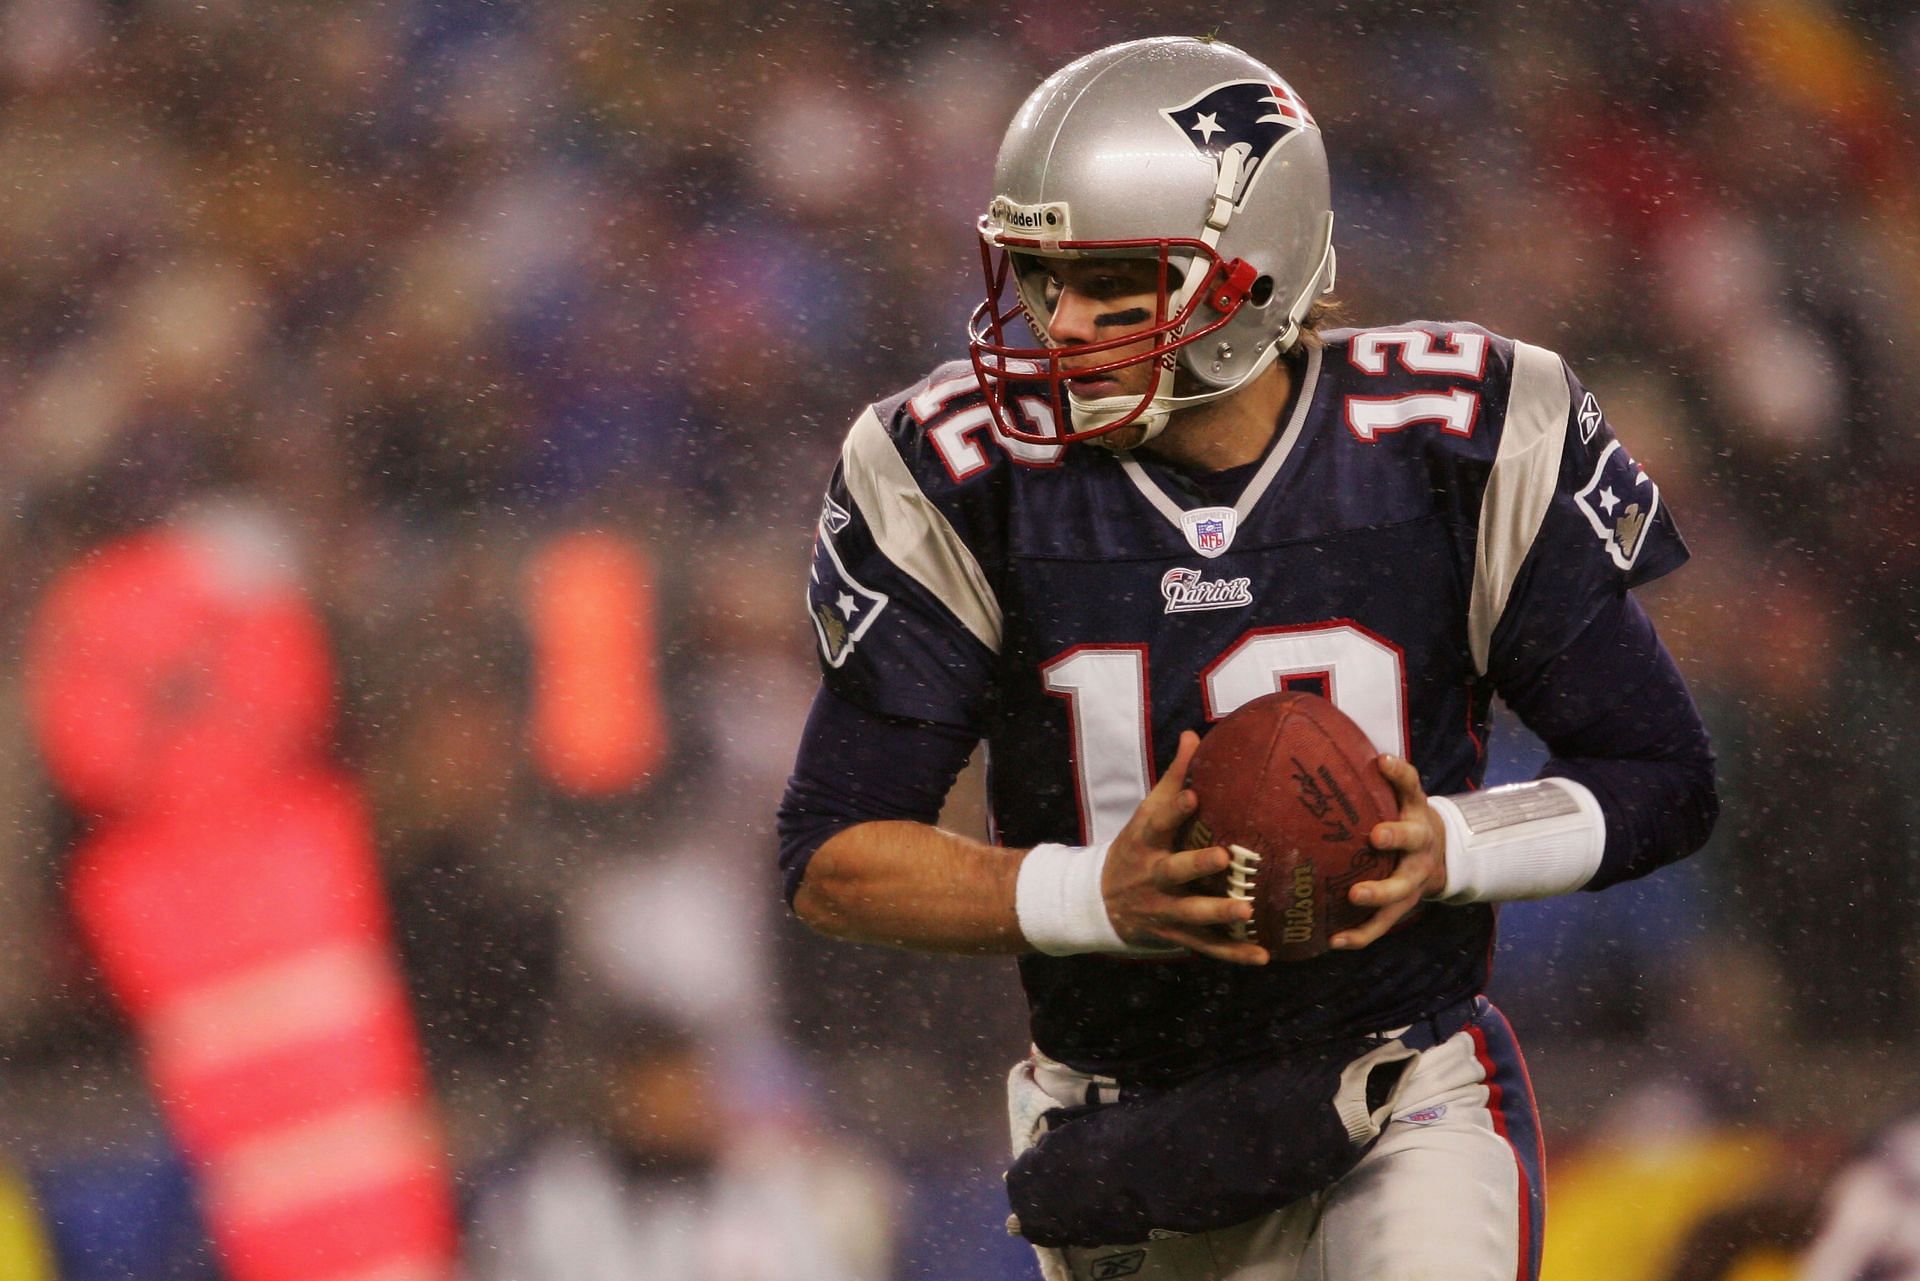 Legendary New England Patriots quarterback Tom Brady